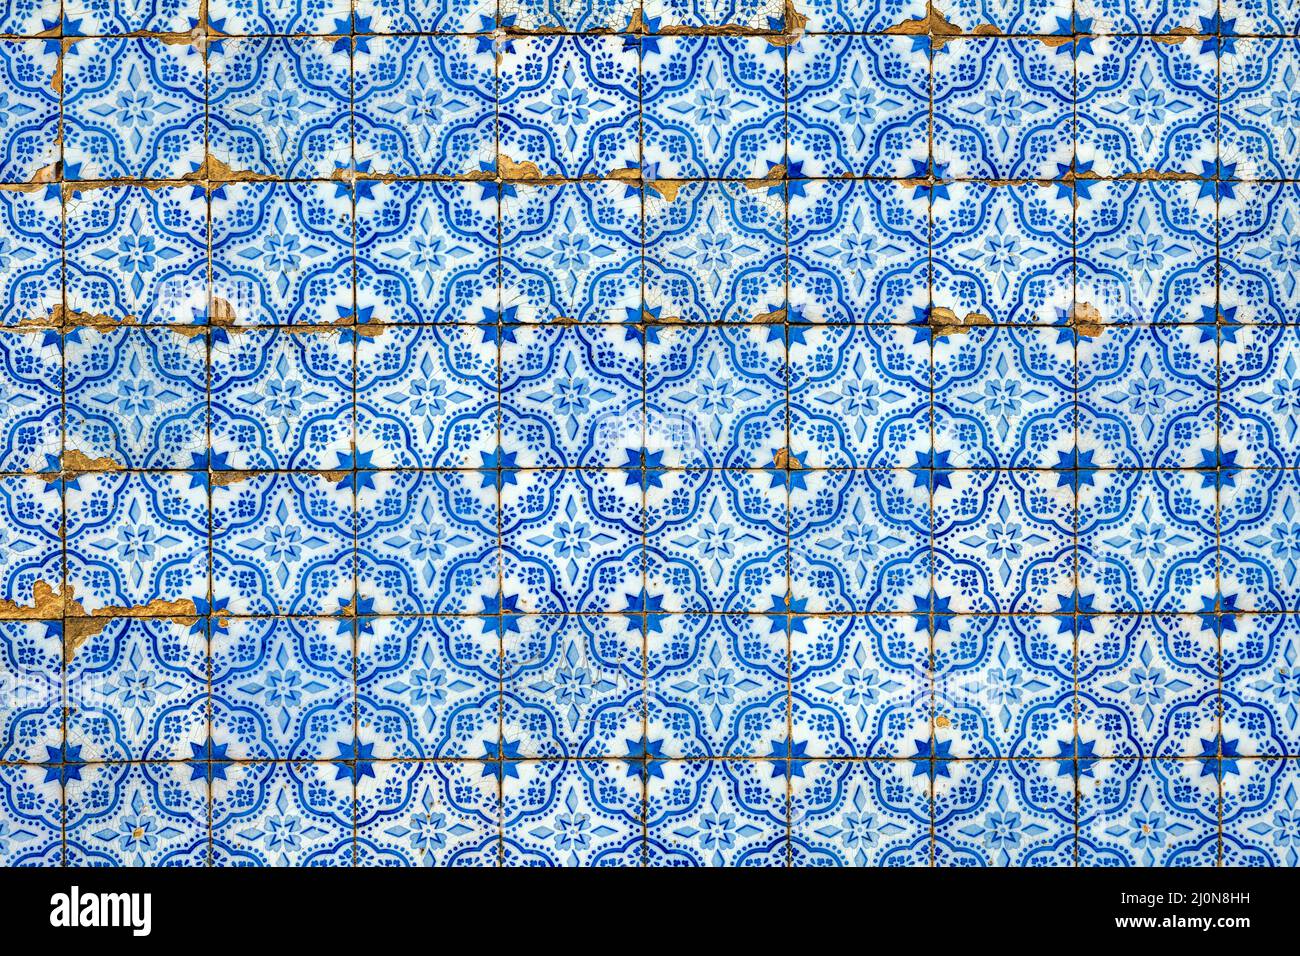 Fondo de azulejos portugueses azules típicos Foto de stock